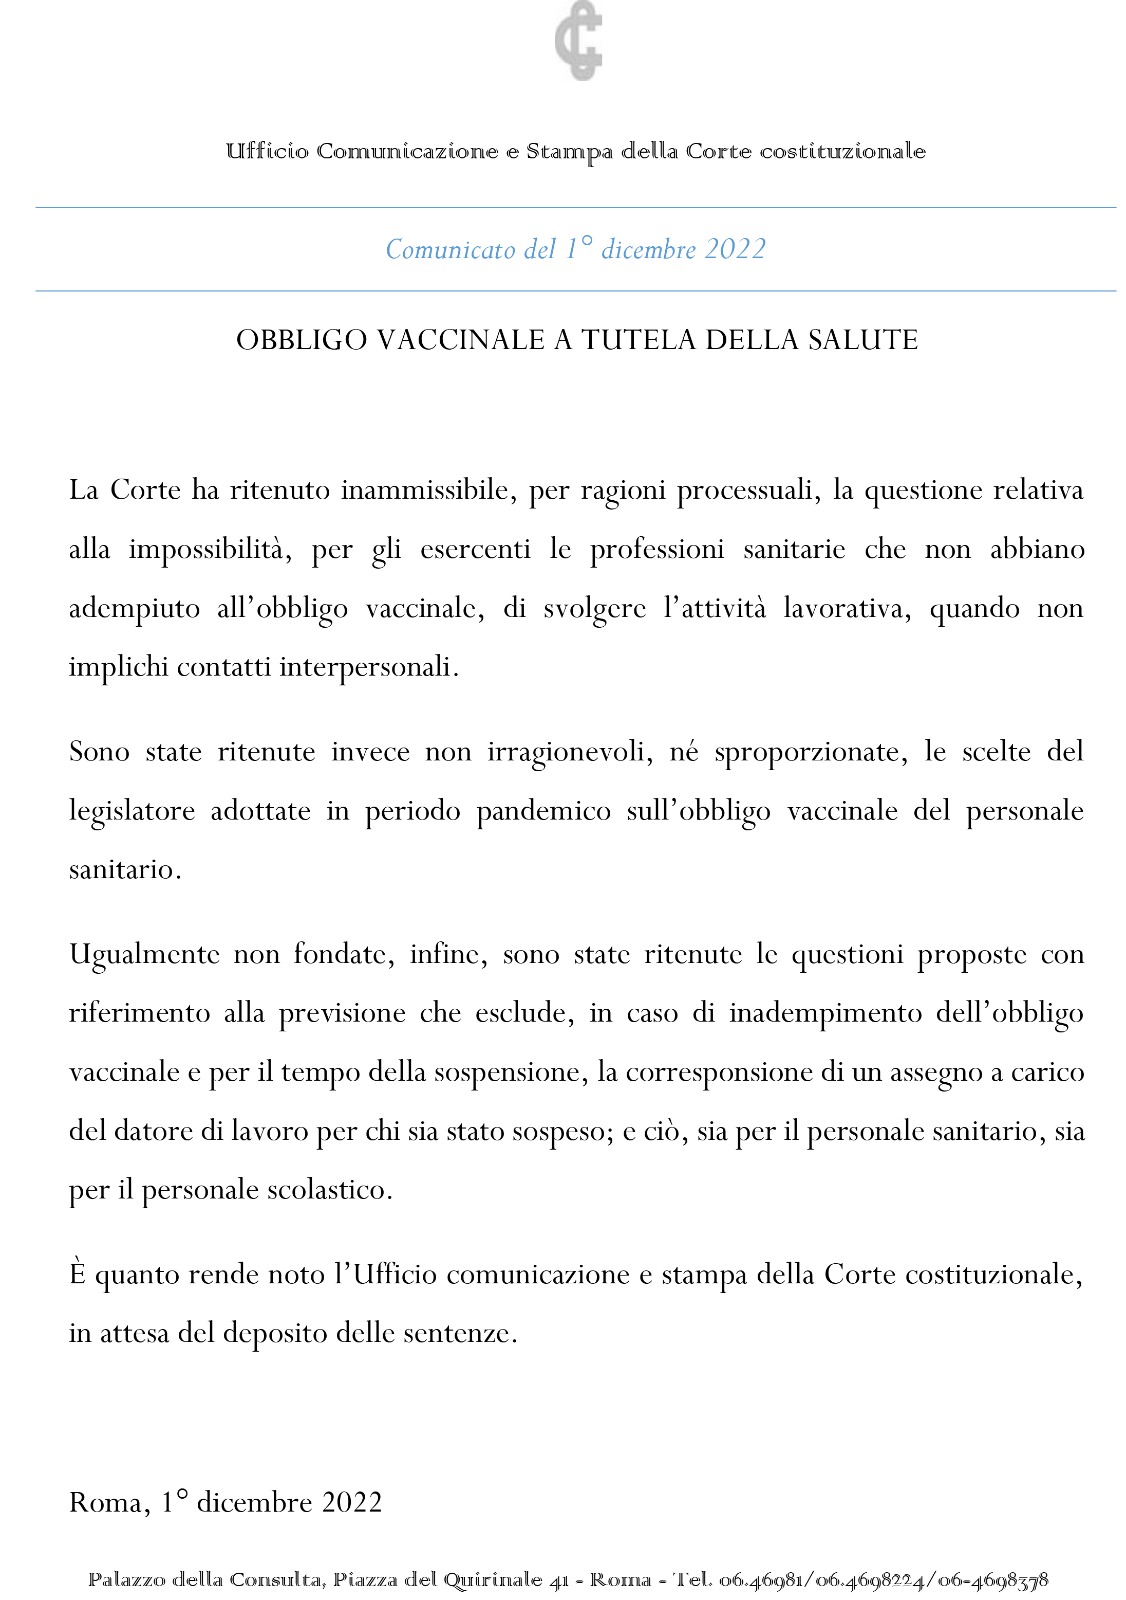 CARLO TAORMINA (PRESIDENTE ITALIA LIBERA): LA COSTITUZIONE NON DIFENDEGLI ITALIANI!